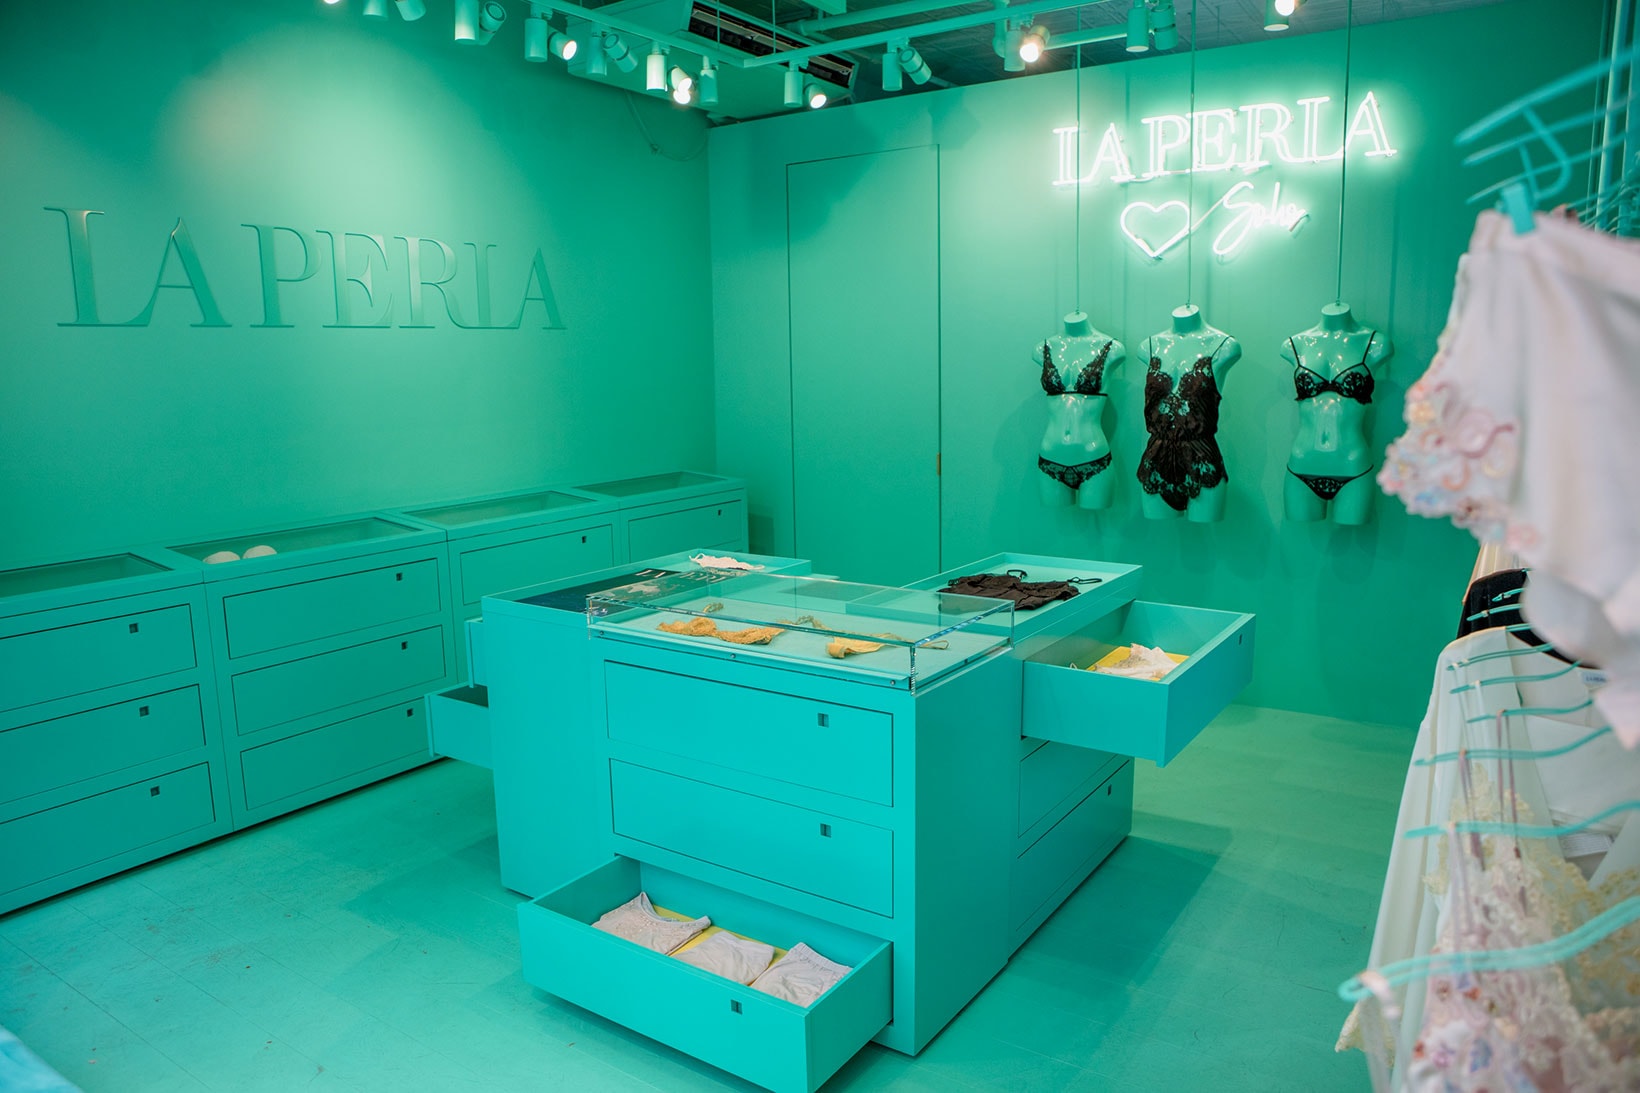 La Perla - Inside the newly refurbished La Perla boutique located